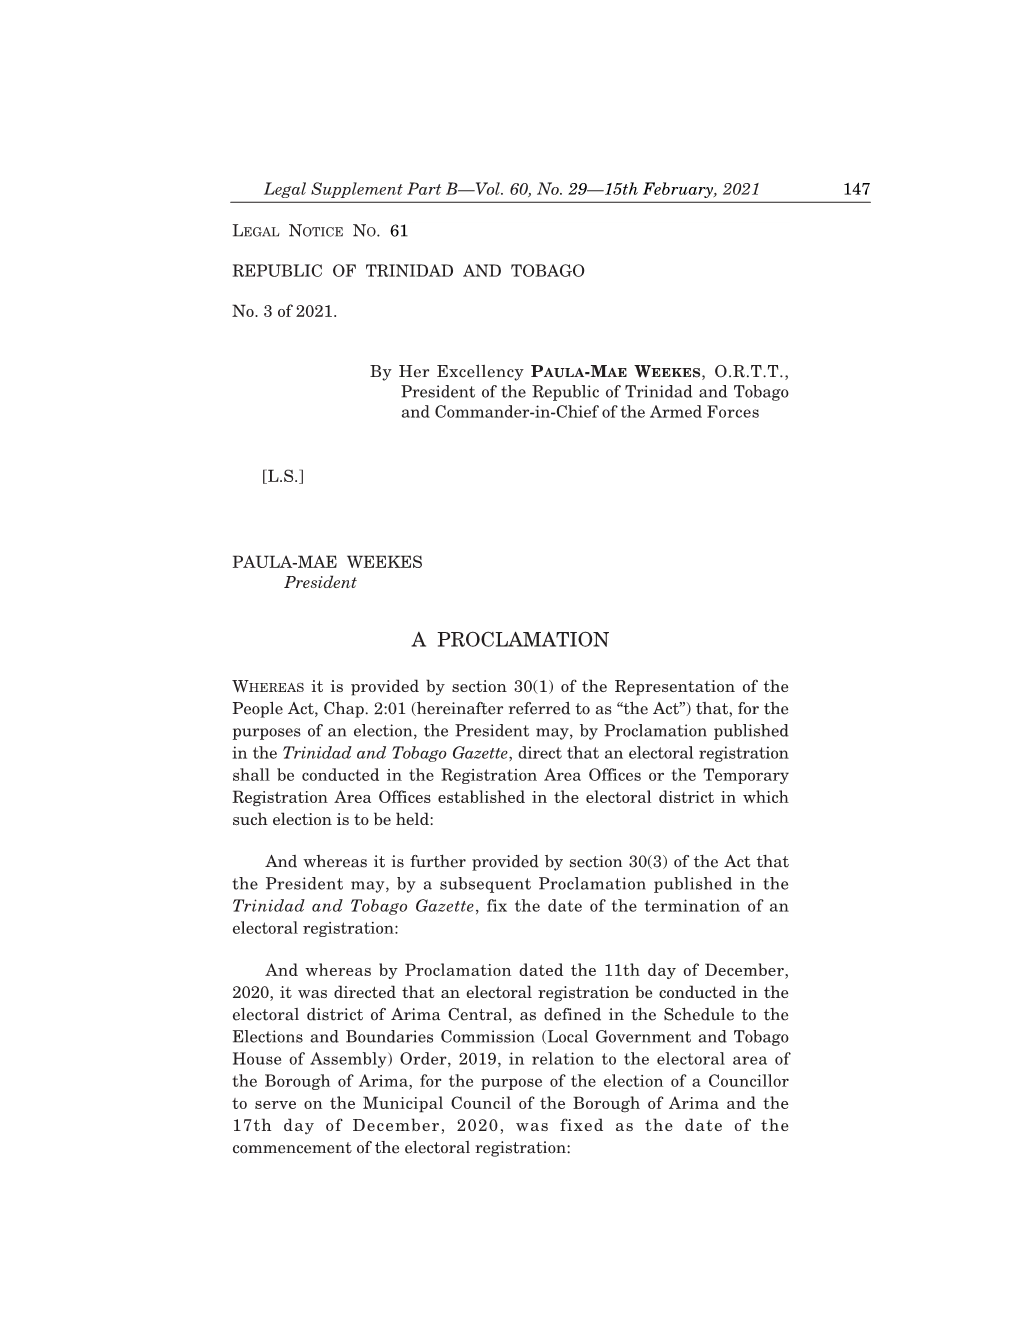 Legal Notice No. 61, Vol. 60, No. 29, 15Th February, 2021